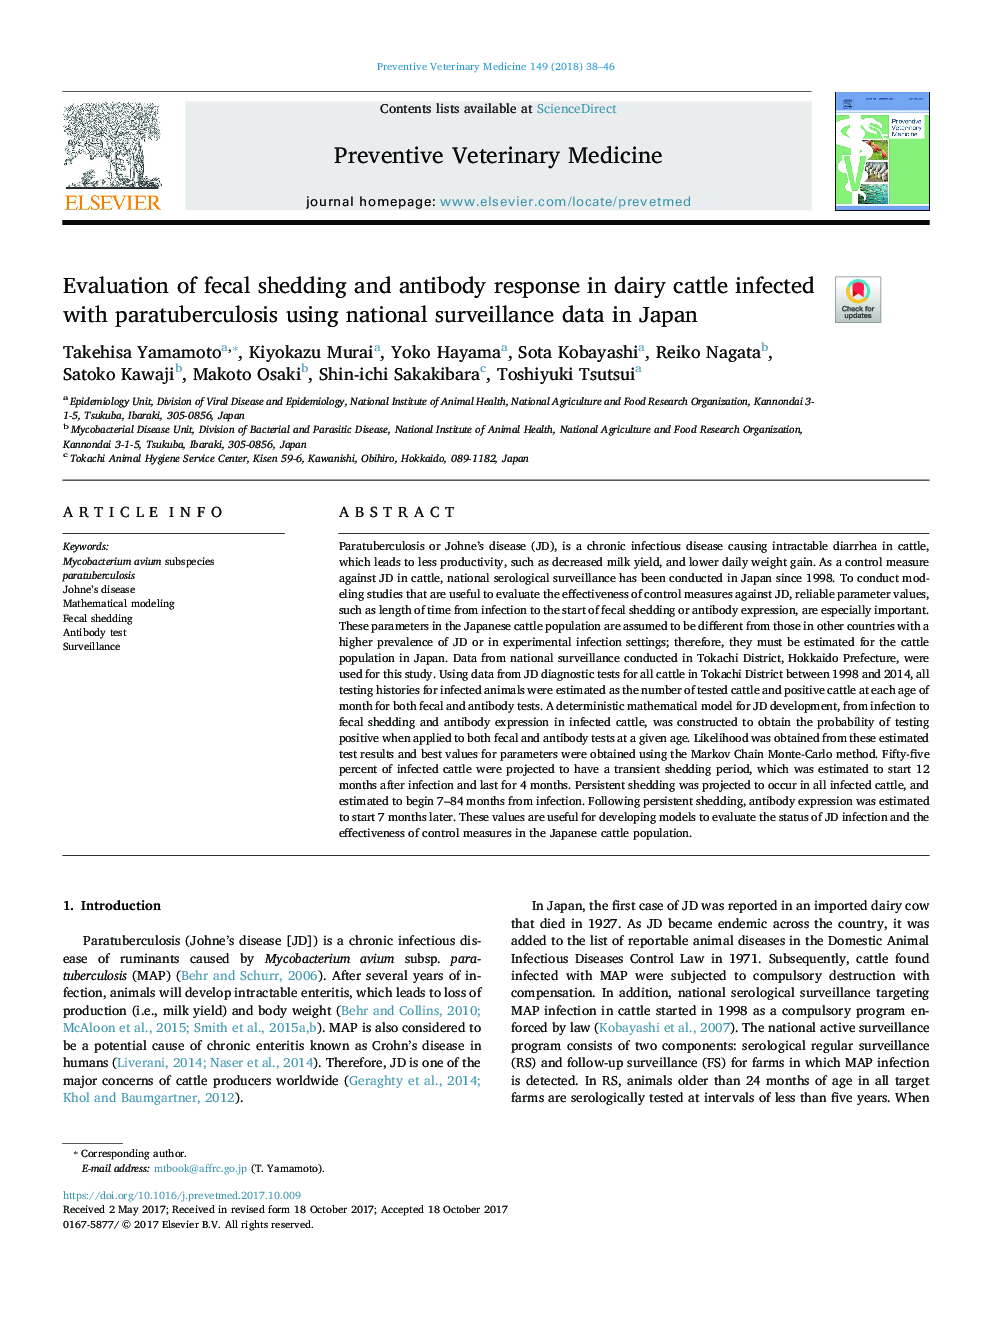 ارزیابی ریزش مدفوع و پاسخ آنتی بادی در گاوهای شیری آلوده به پاراتوبرکلوز با استفاده از داده های نظارت ملی در ژاپن 